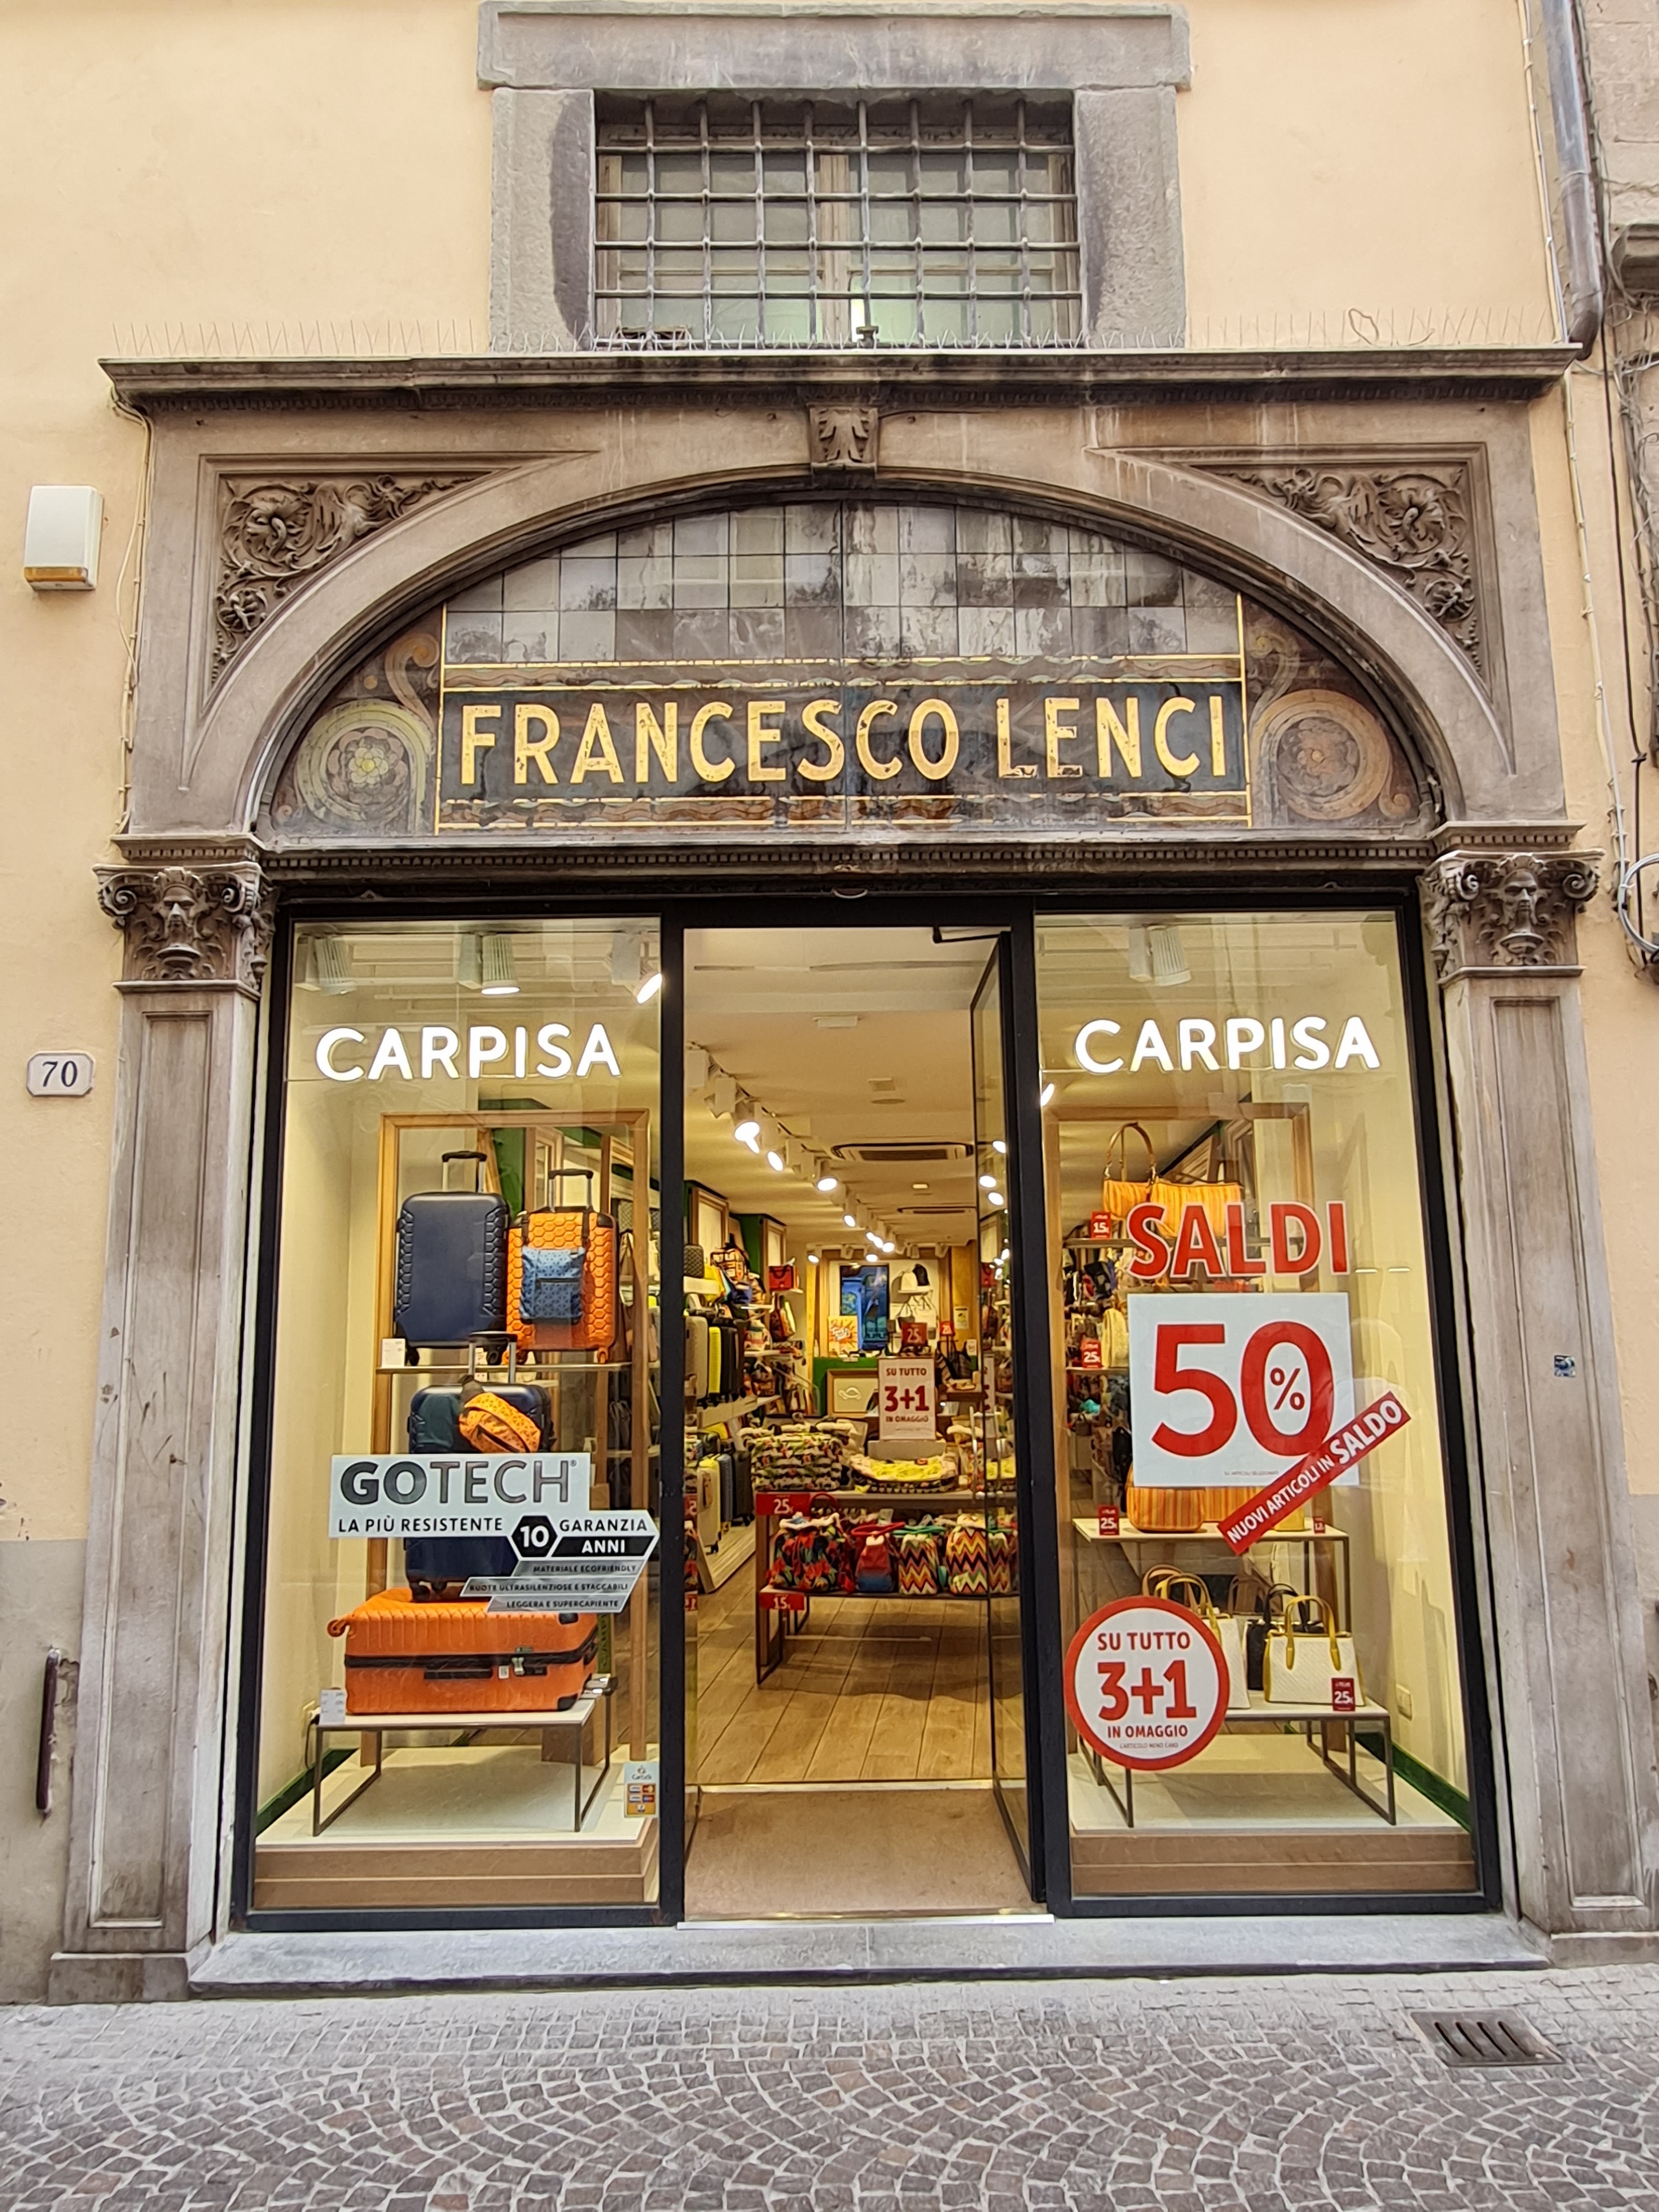 bottega, negozio di accessori, Carpisa, Francesco Lenci (ex) (ultimo quarto XIX)